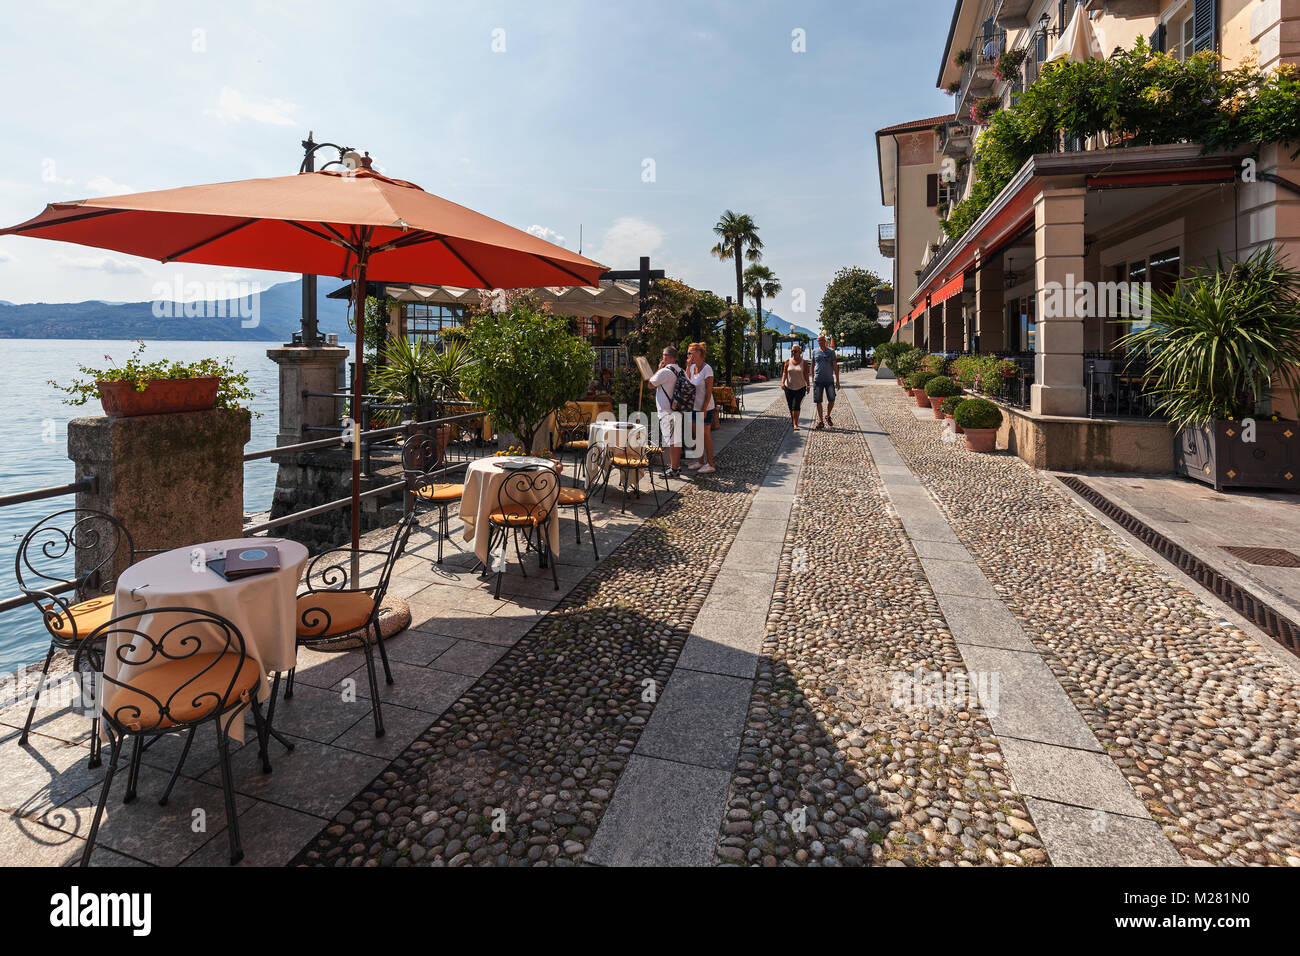 Waterfront with restaurants, Cannero Riviera, Lago Maggiore, Verbano-Cusio-Ossola Province, Piedmont Region, Italy Stock Photo